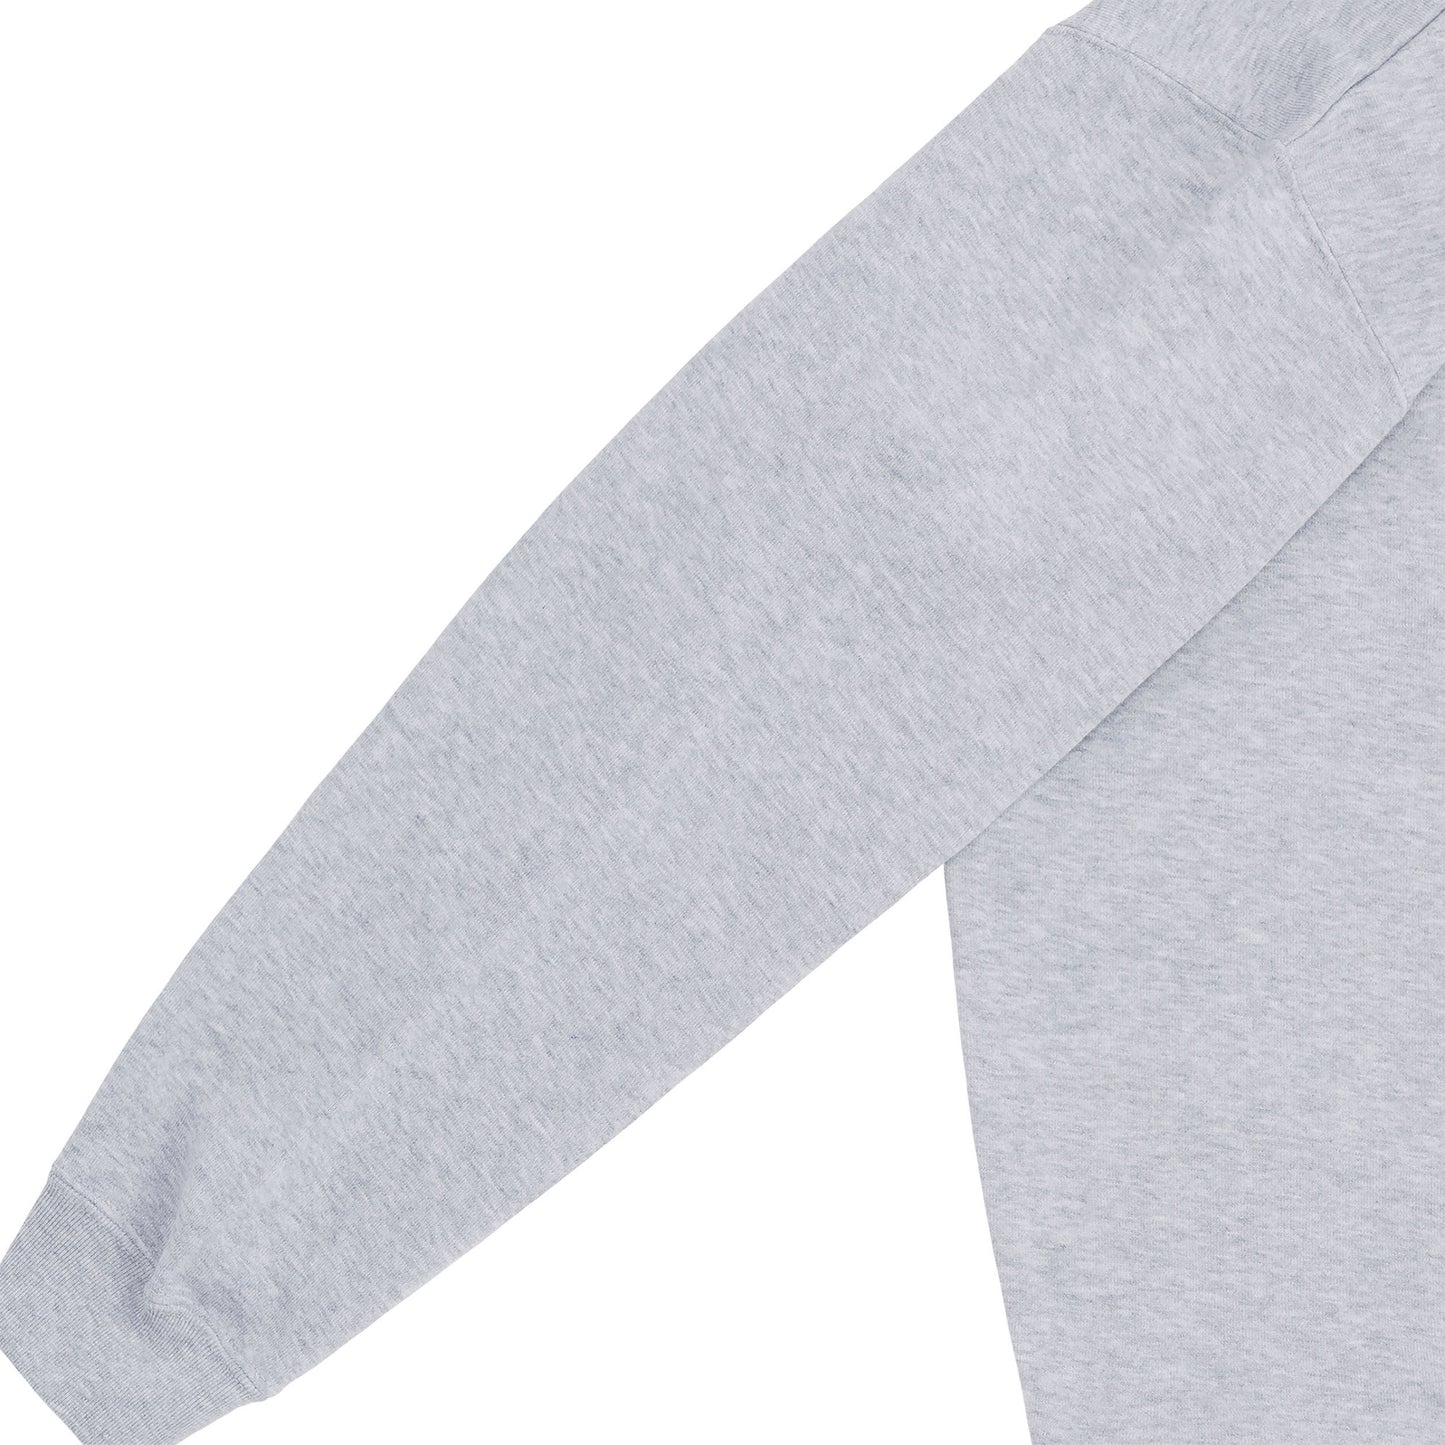 Standard Reverse Fleece Sweatshirt　"GENIUS"